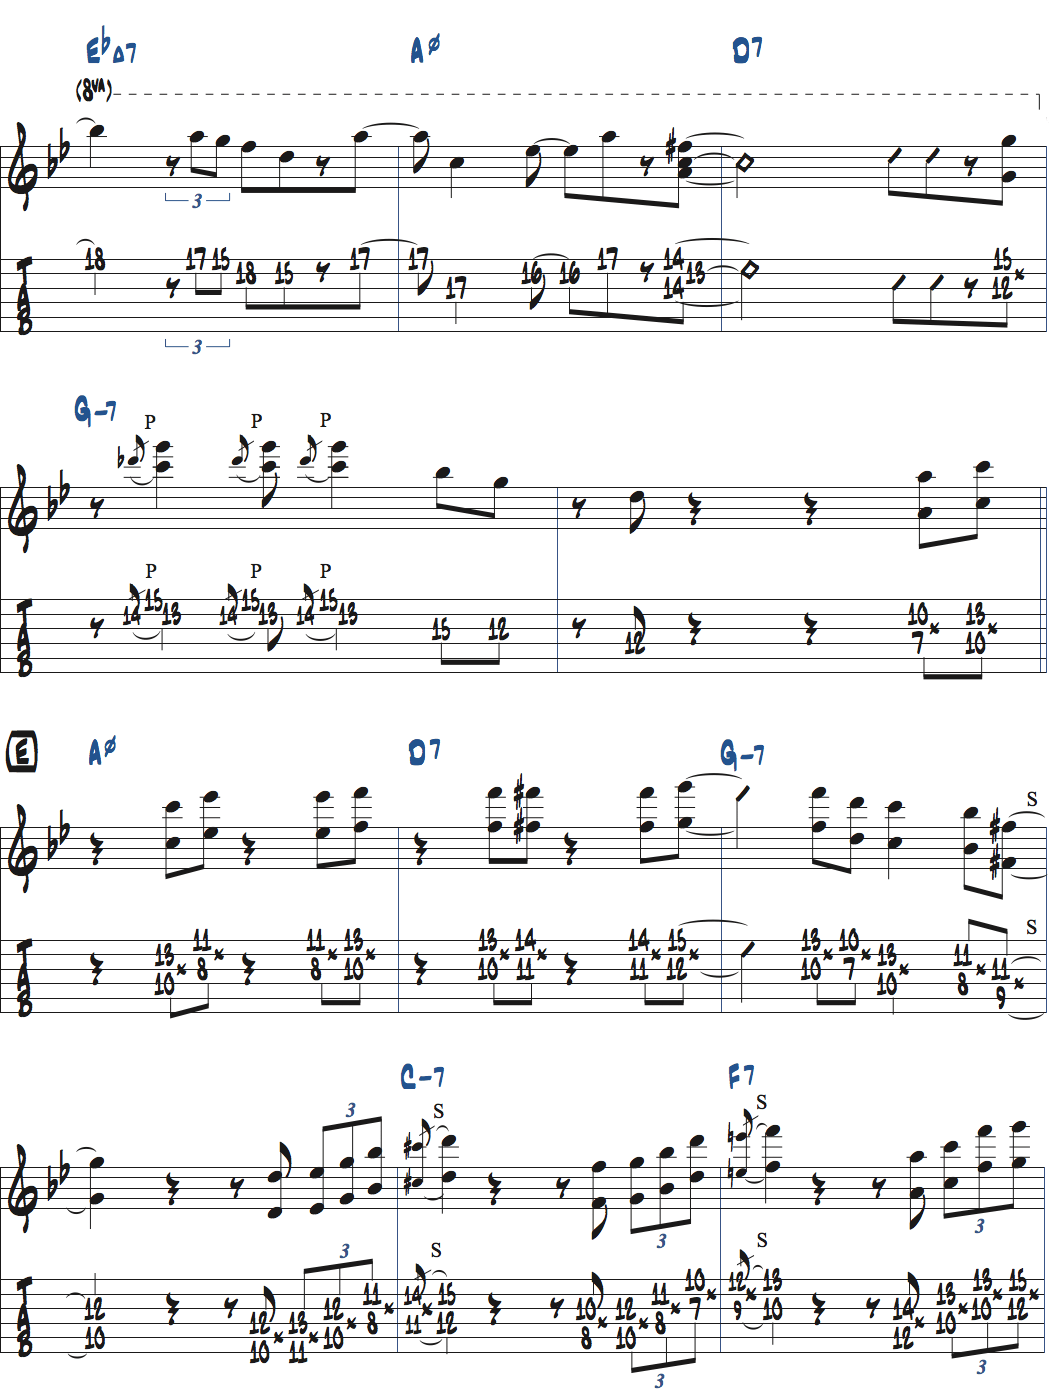 枯葉のアドリブ例楽譜ページ4